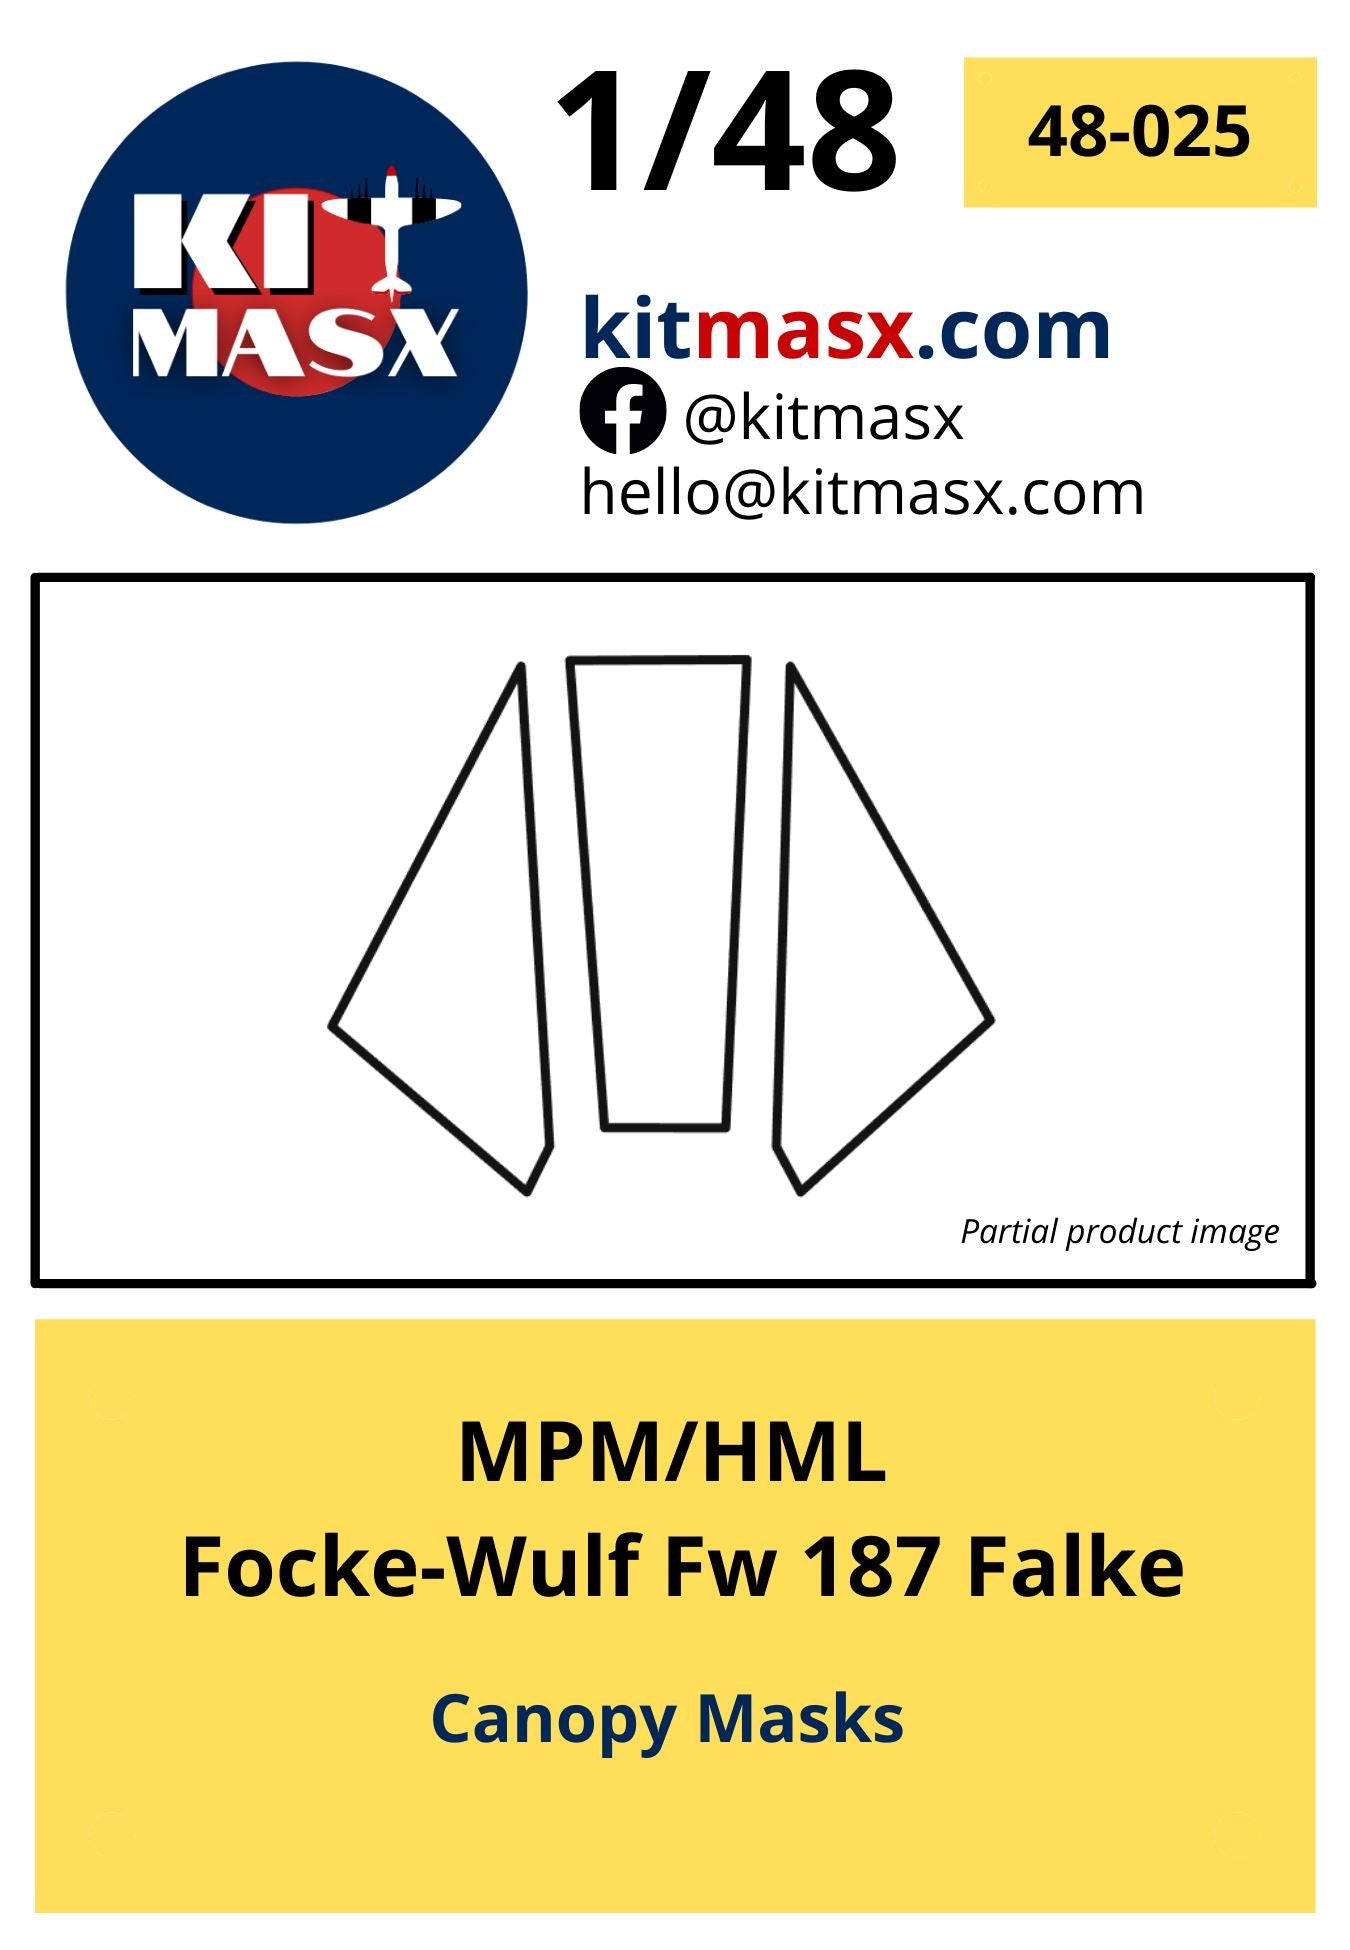 MPM/HML Focke-Wulf Fw 187 Falke Scale Model Accessories Kit Masx 